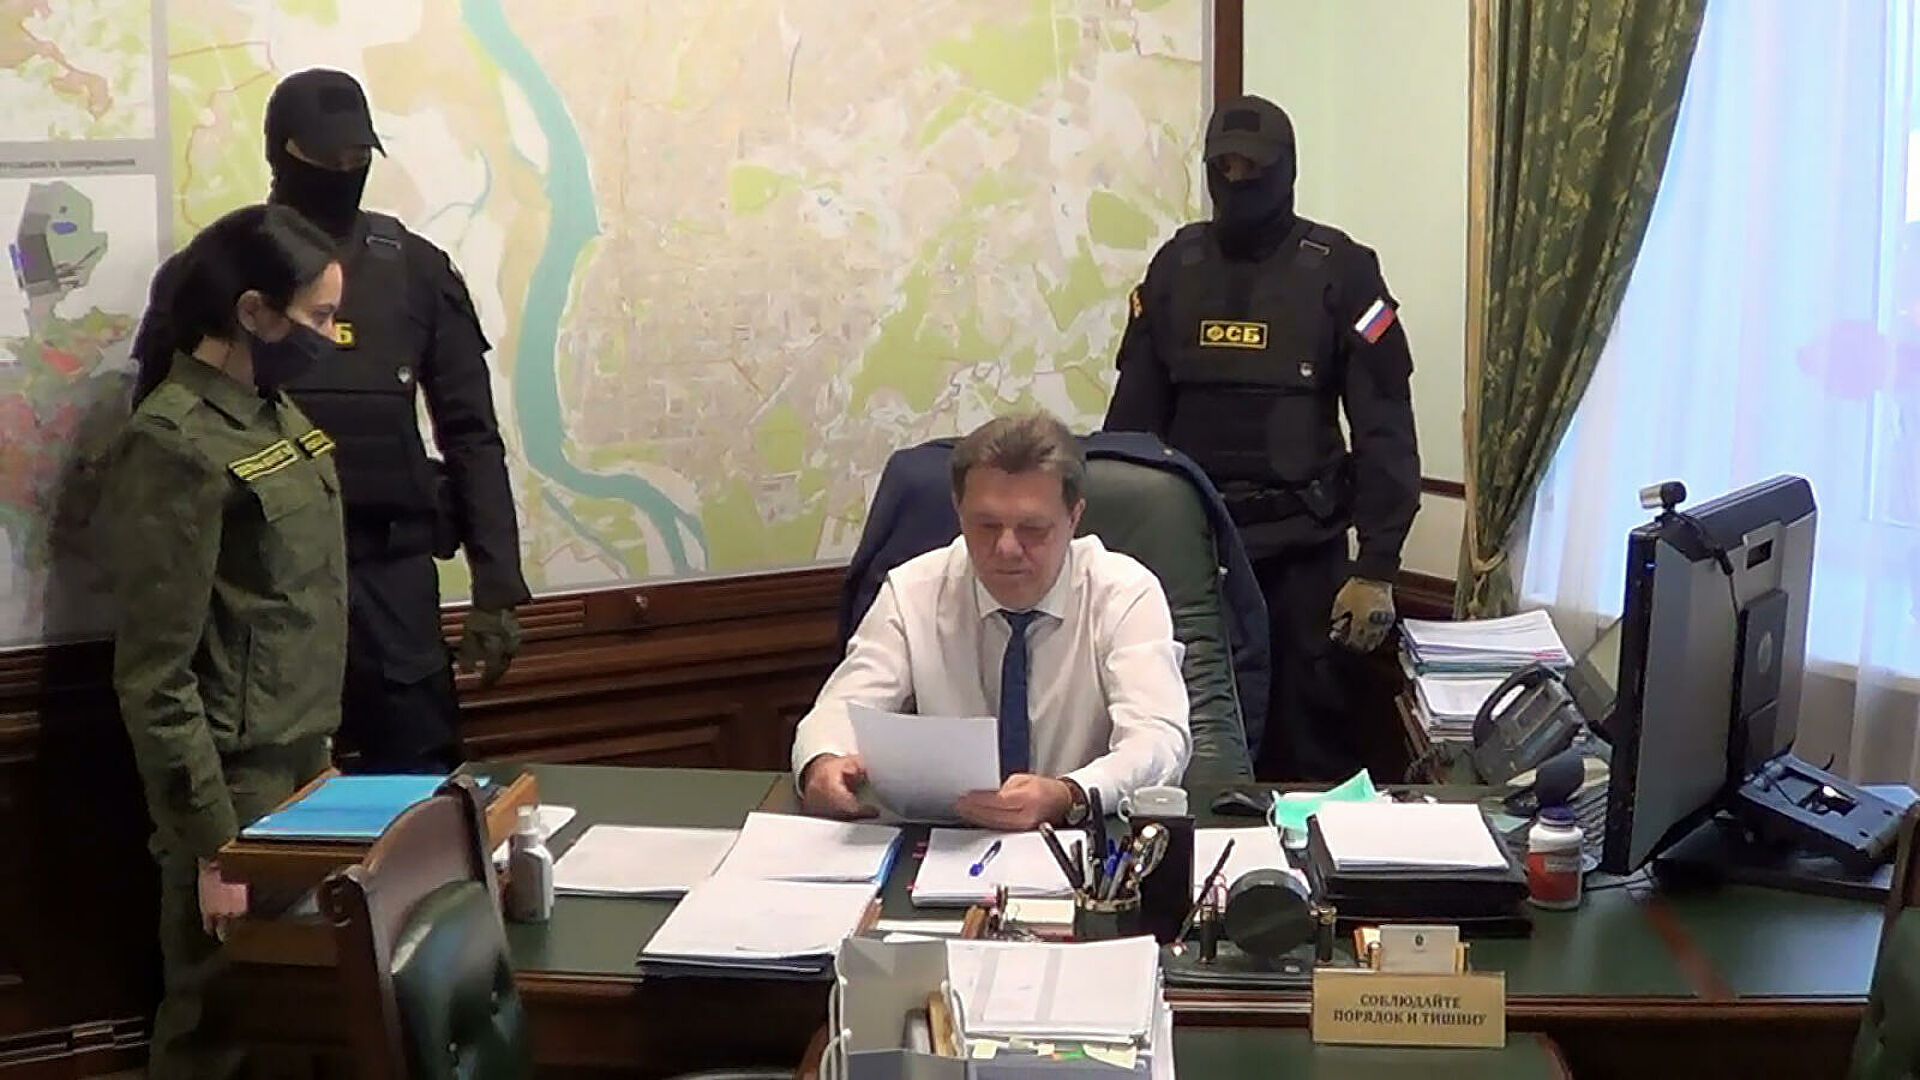 Дело о злоупотреблении должностными полномочиями. Мэр Томска арестован. Суд над чиновниками.